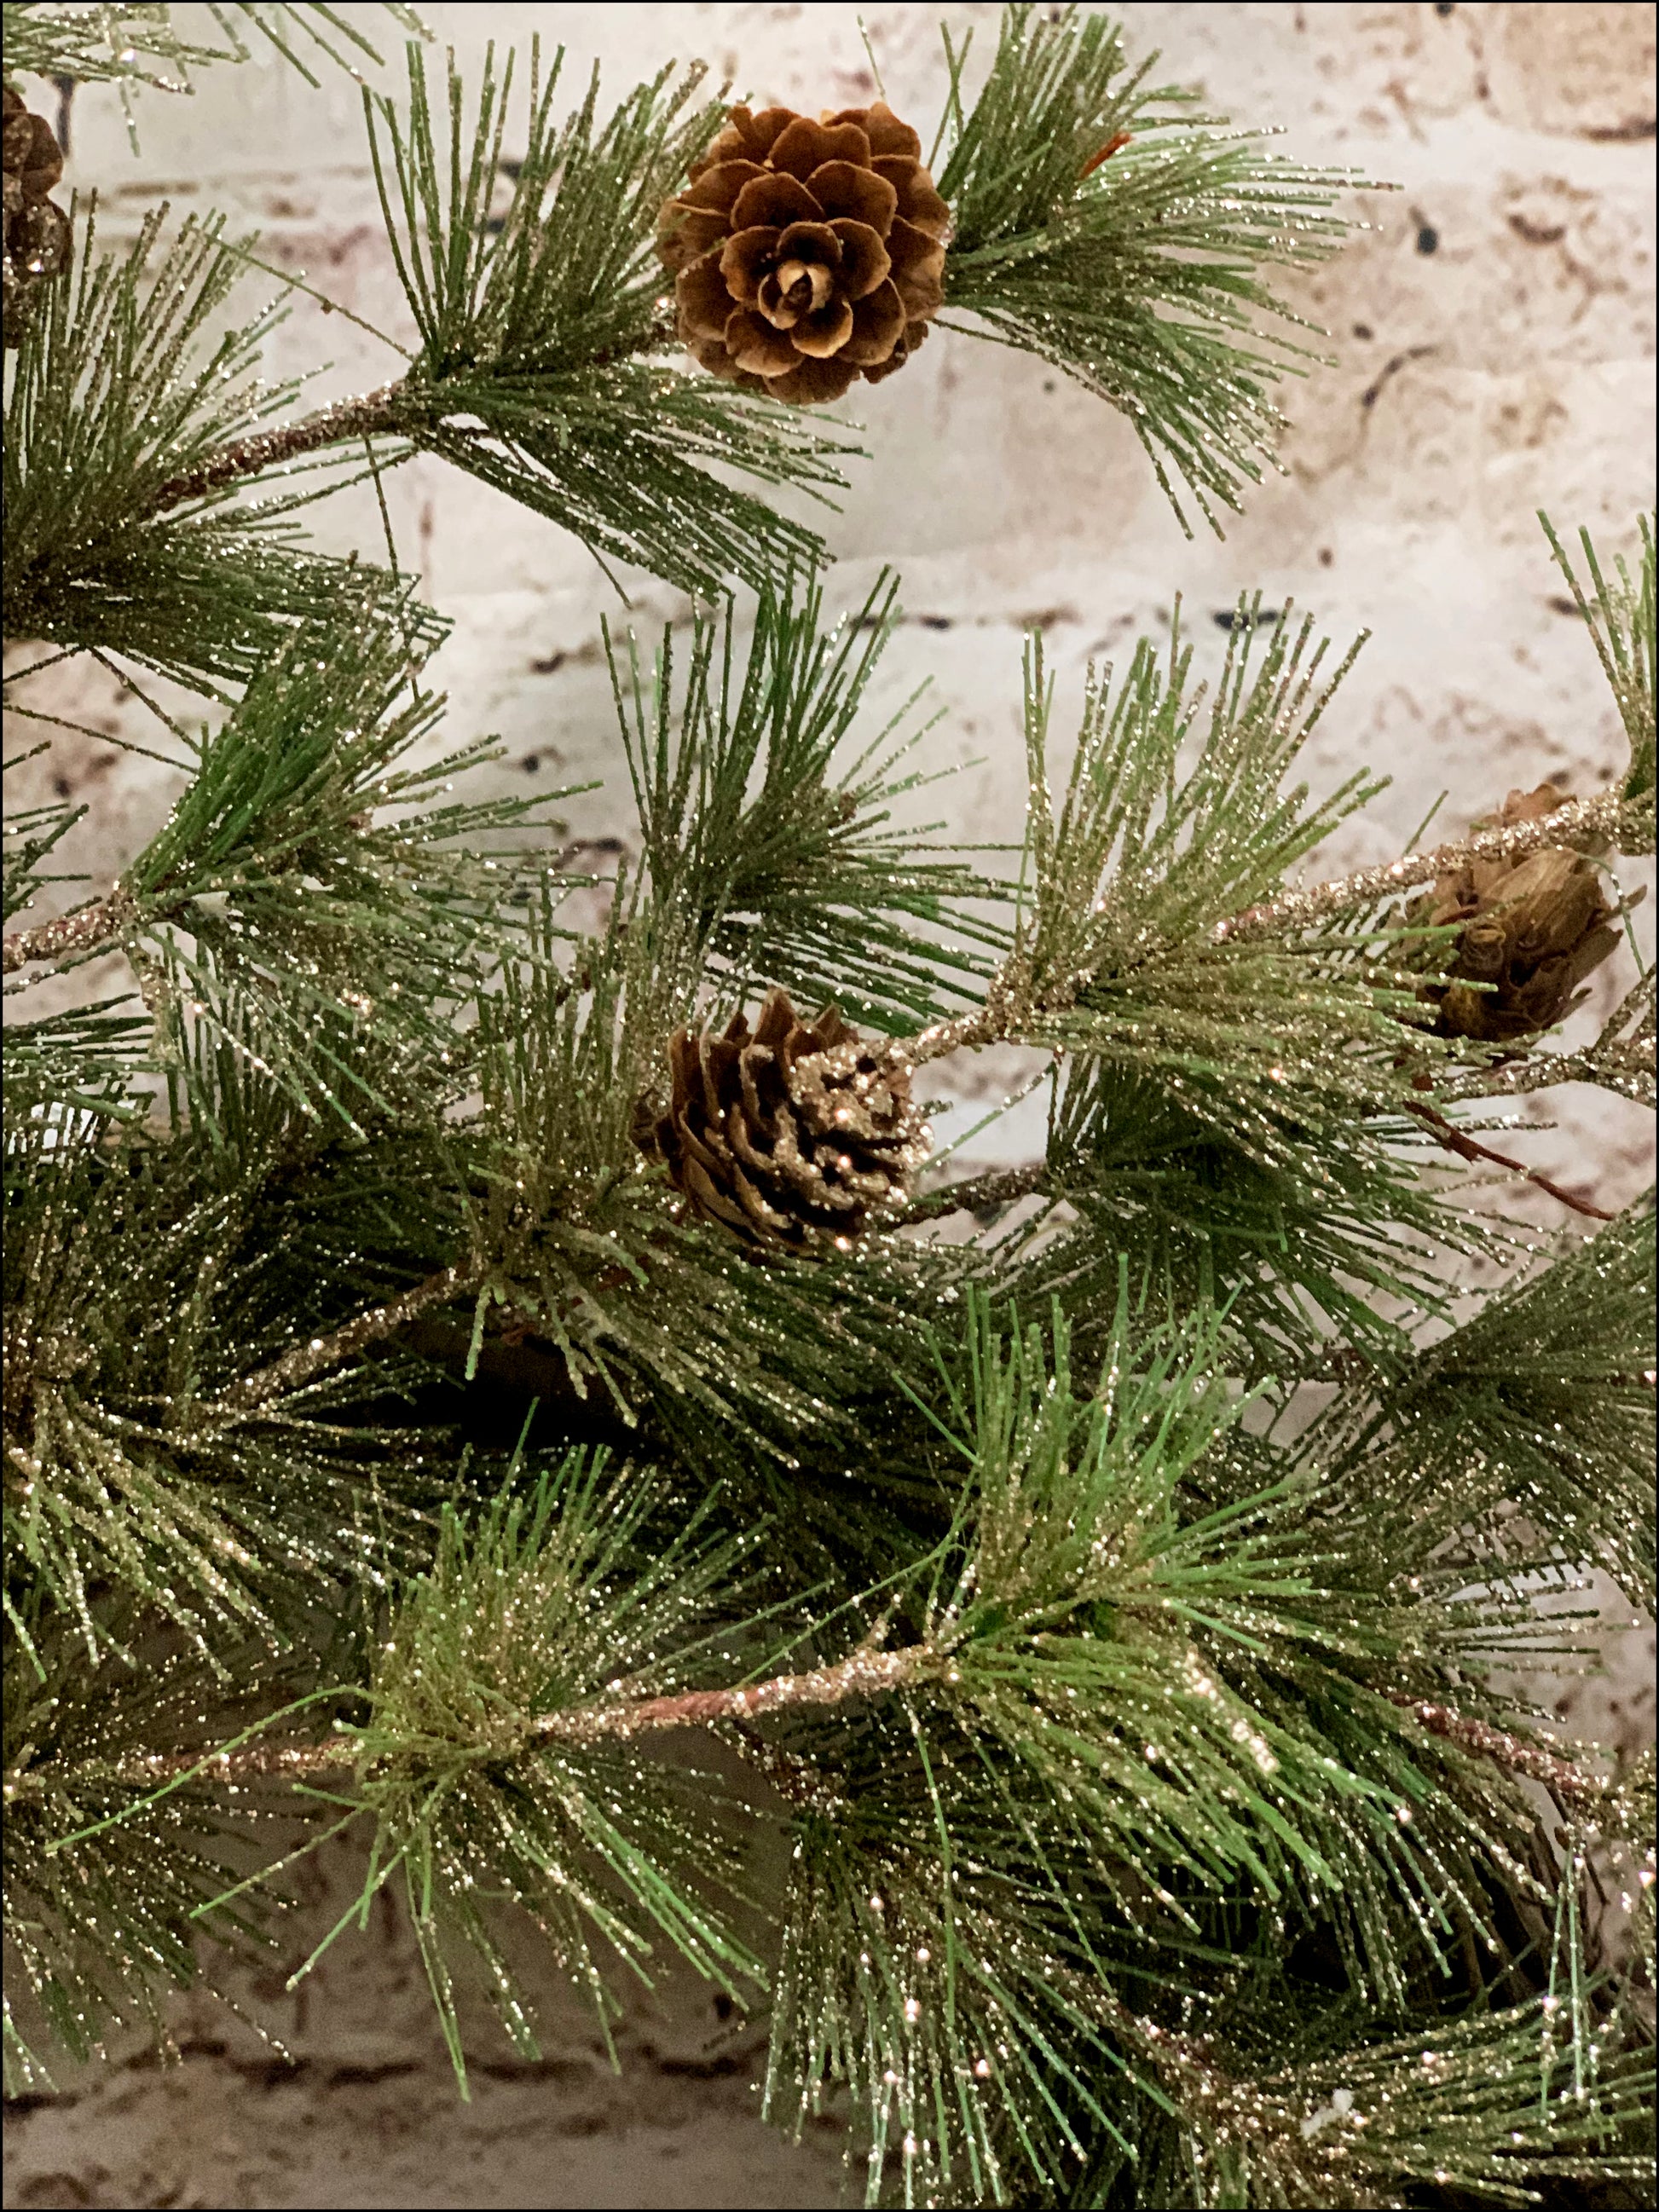 Gold Glitz Pine Wreath with Pine Cones - Designer DIY